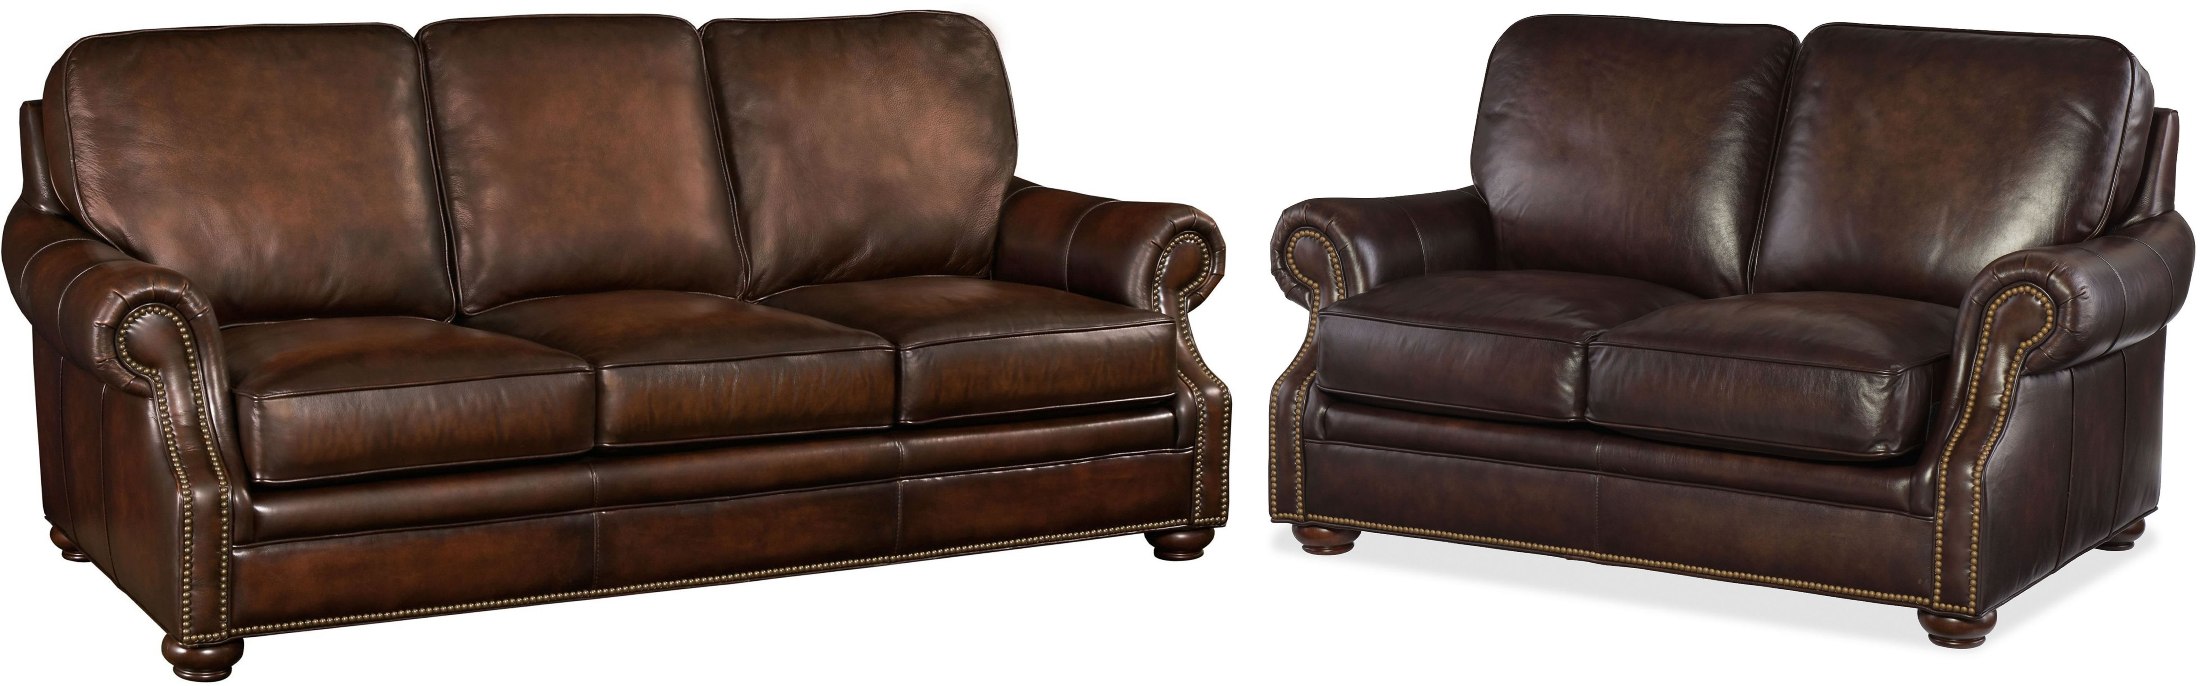 montgomery genuine leather sofa